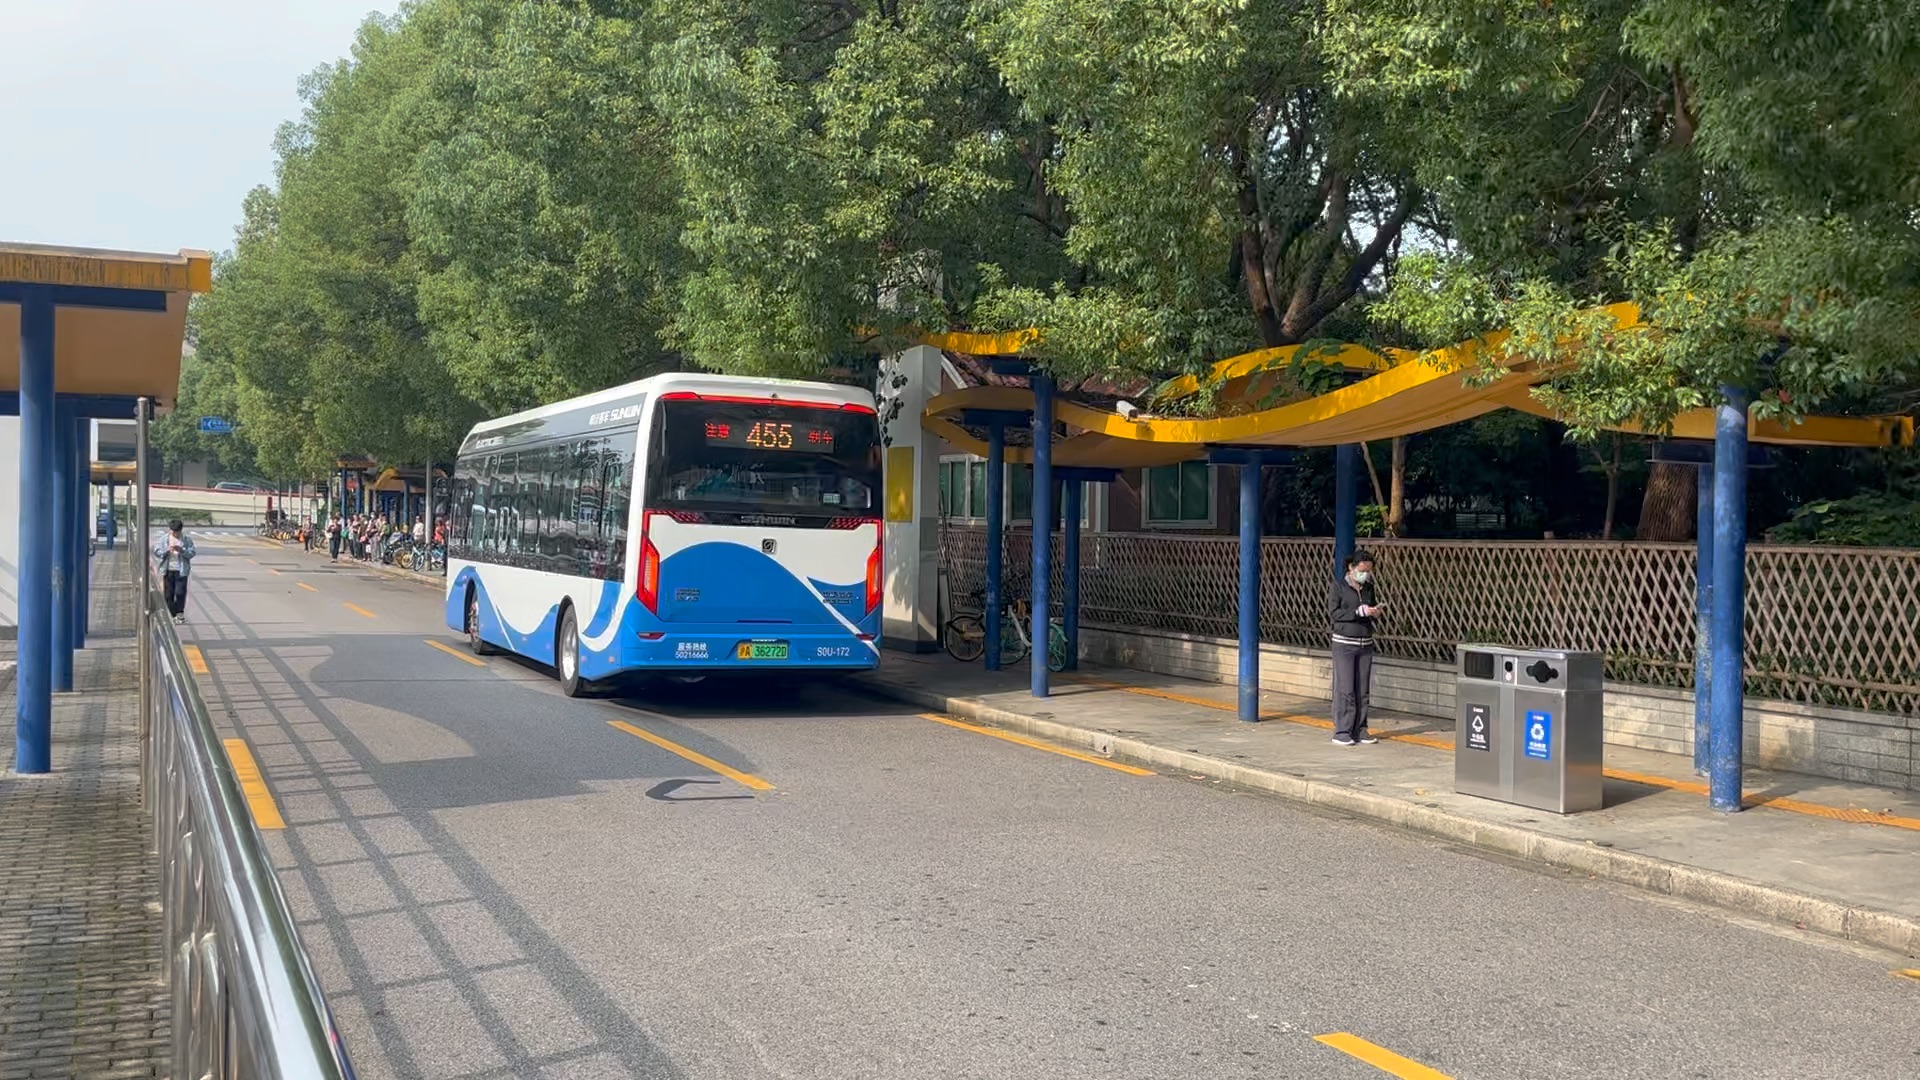 上海公交车 新车图片